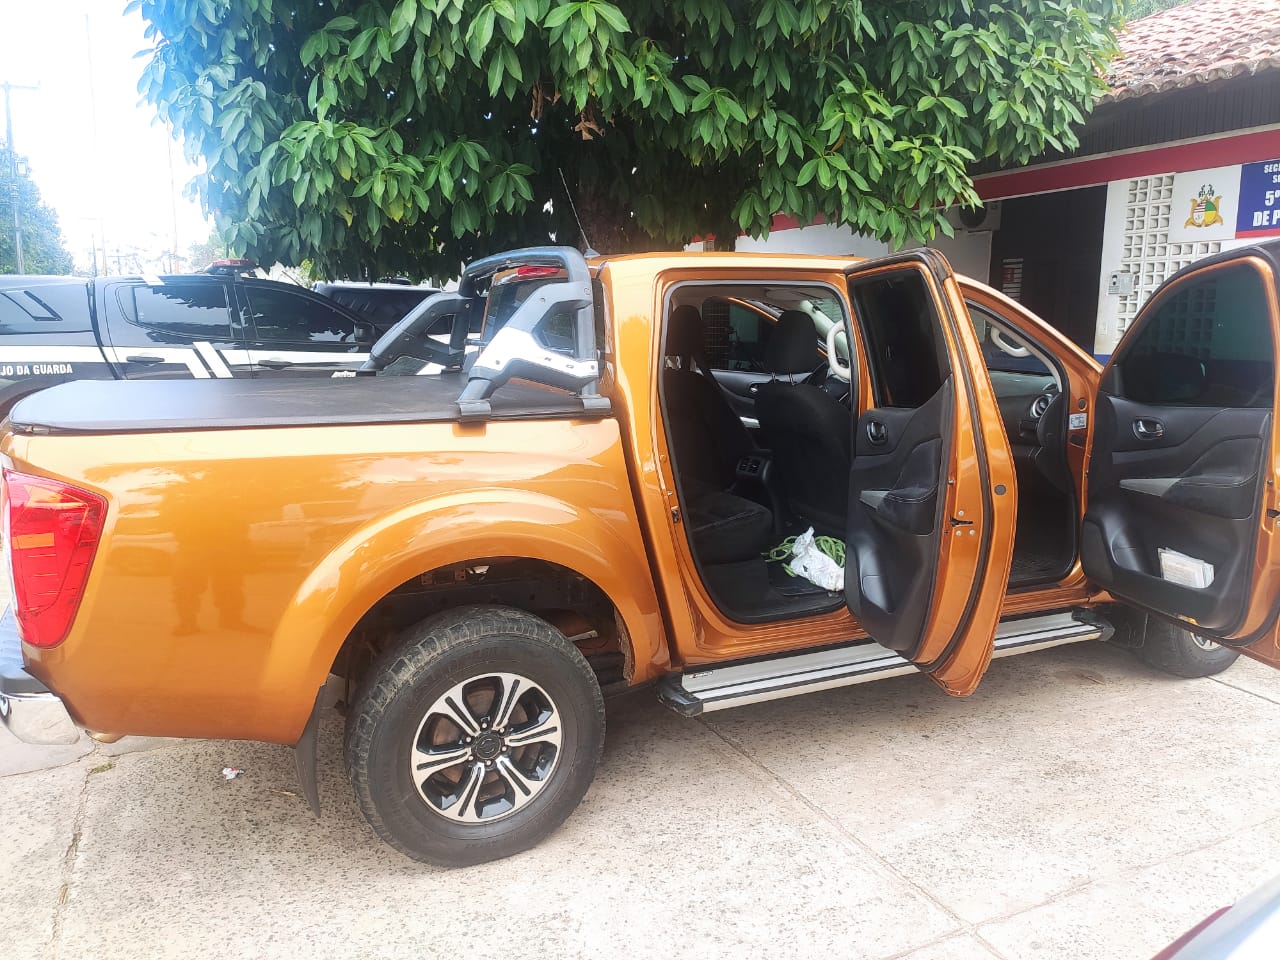 Polícia Militar recupera carro roubado de deputada no Maranhão A ocorrência foi registrada no sábado, 6, nas proximidades do bairro Calhau, em São Luís.